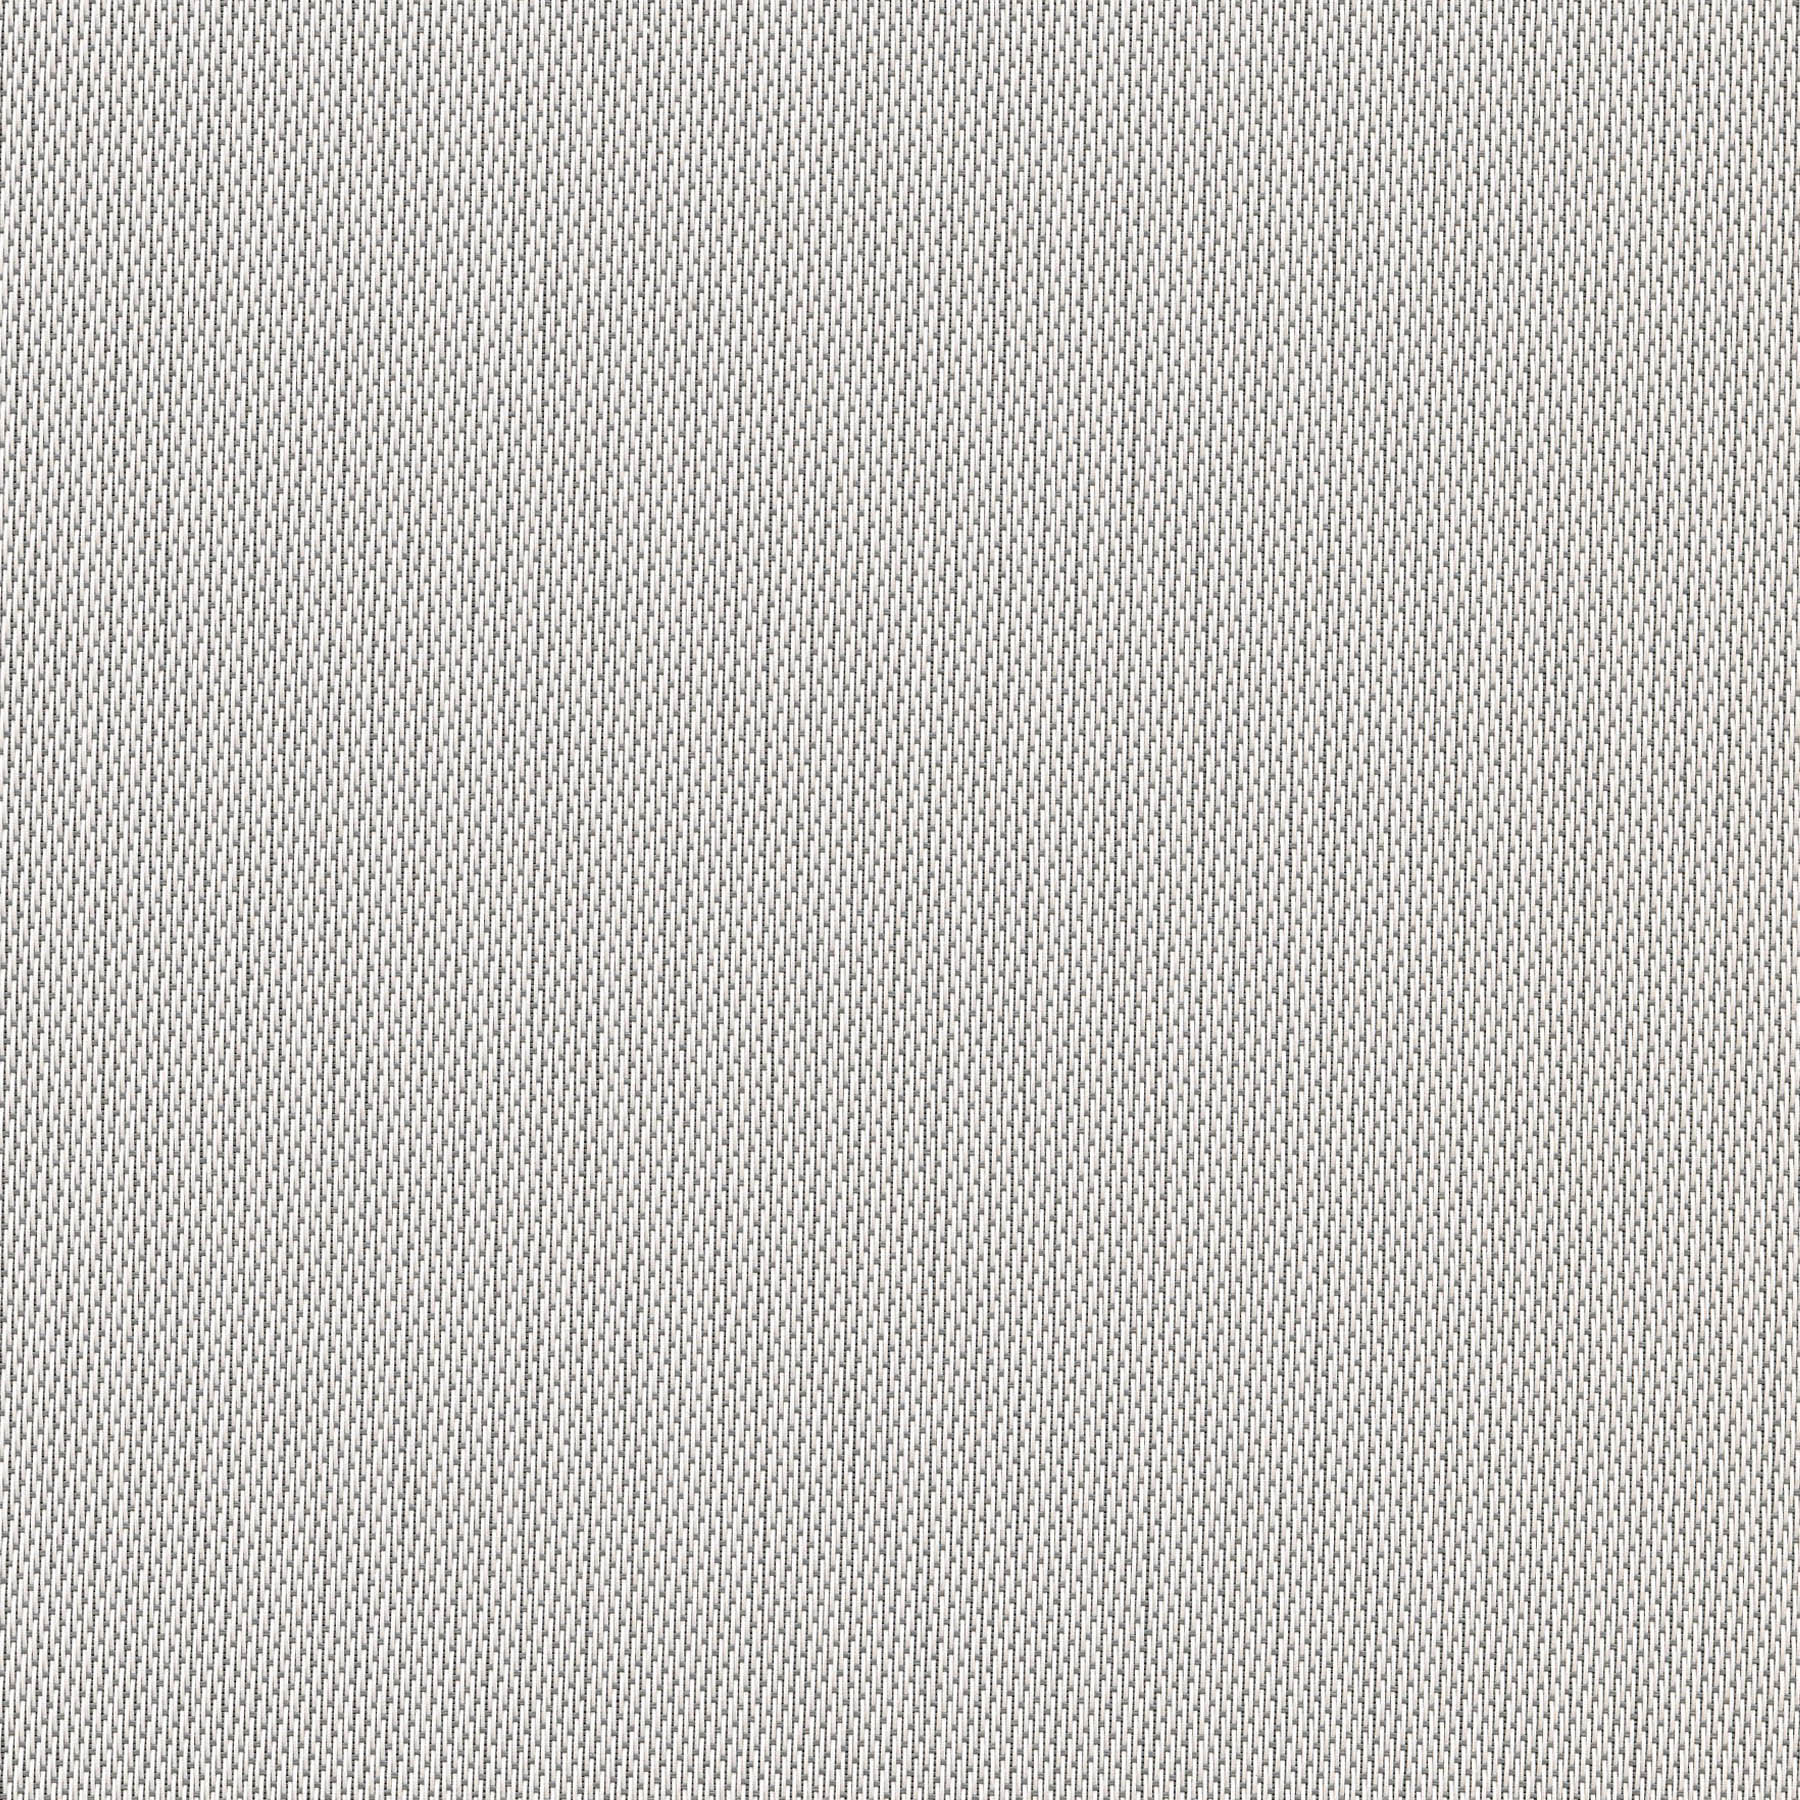 Altex - Fabric - SHEERWEAVE 2701 - Grey/White - 153